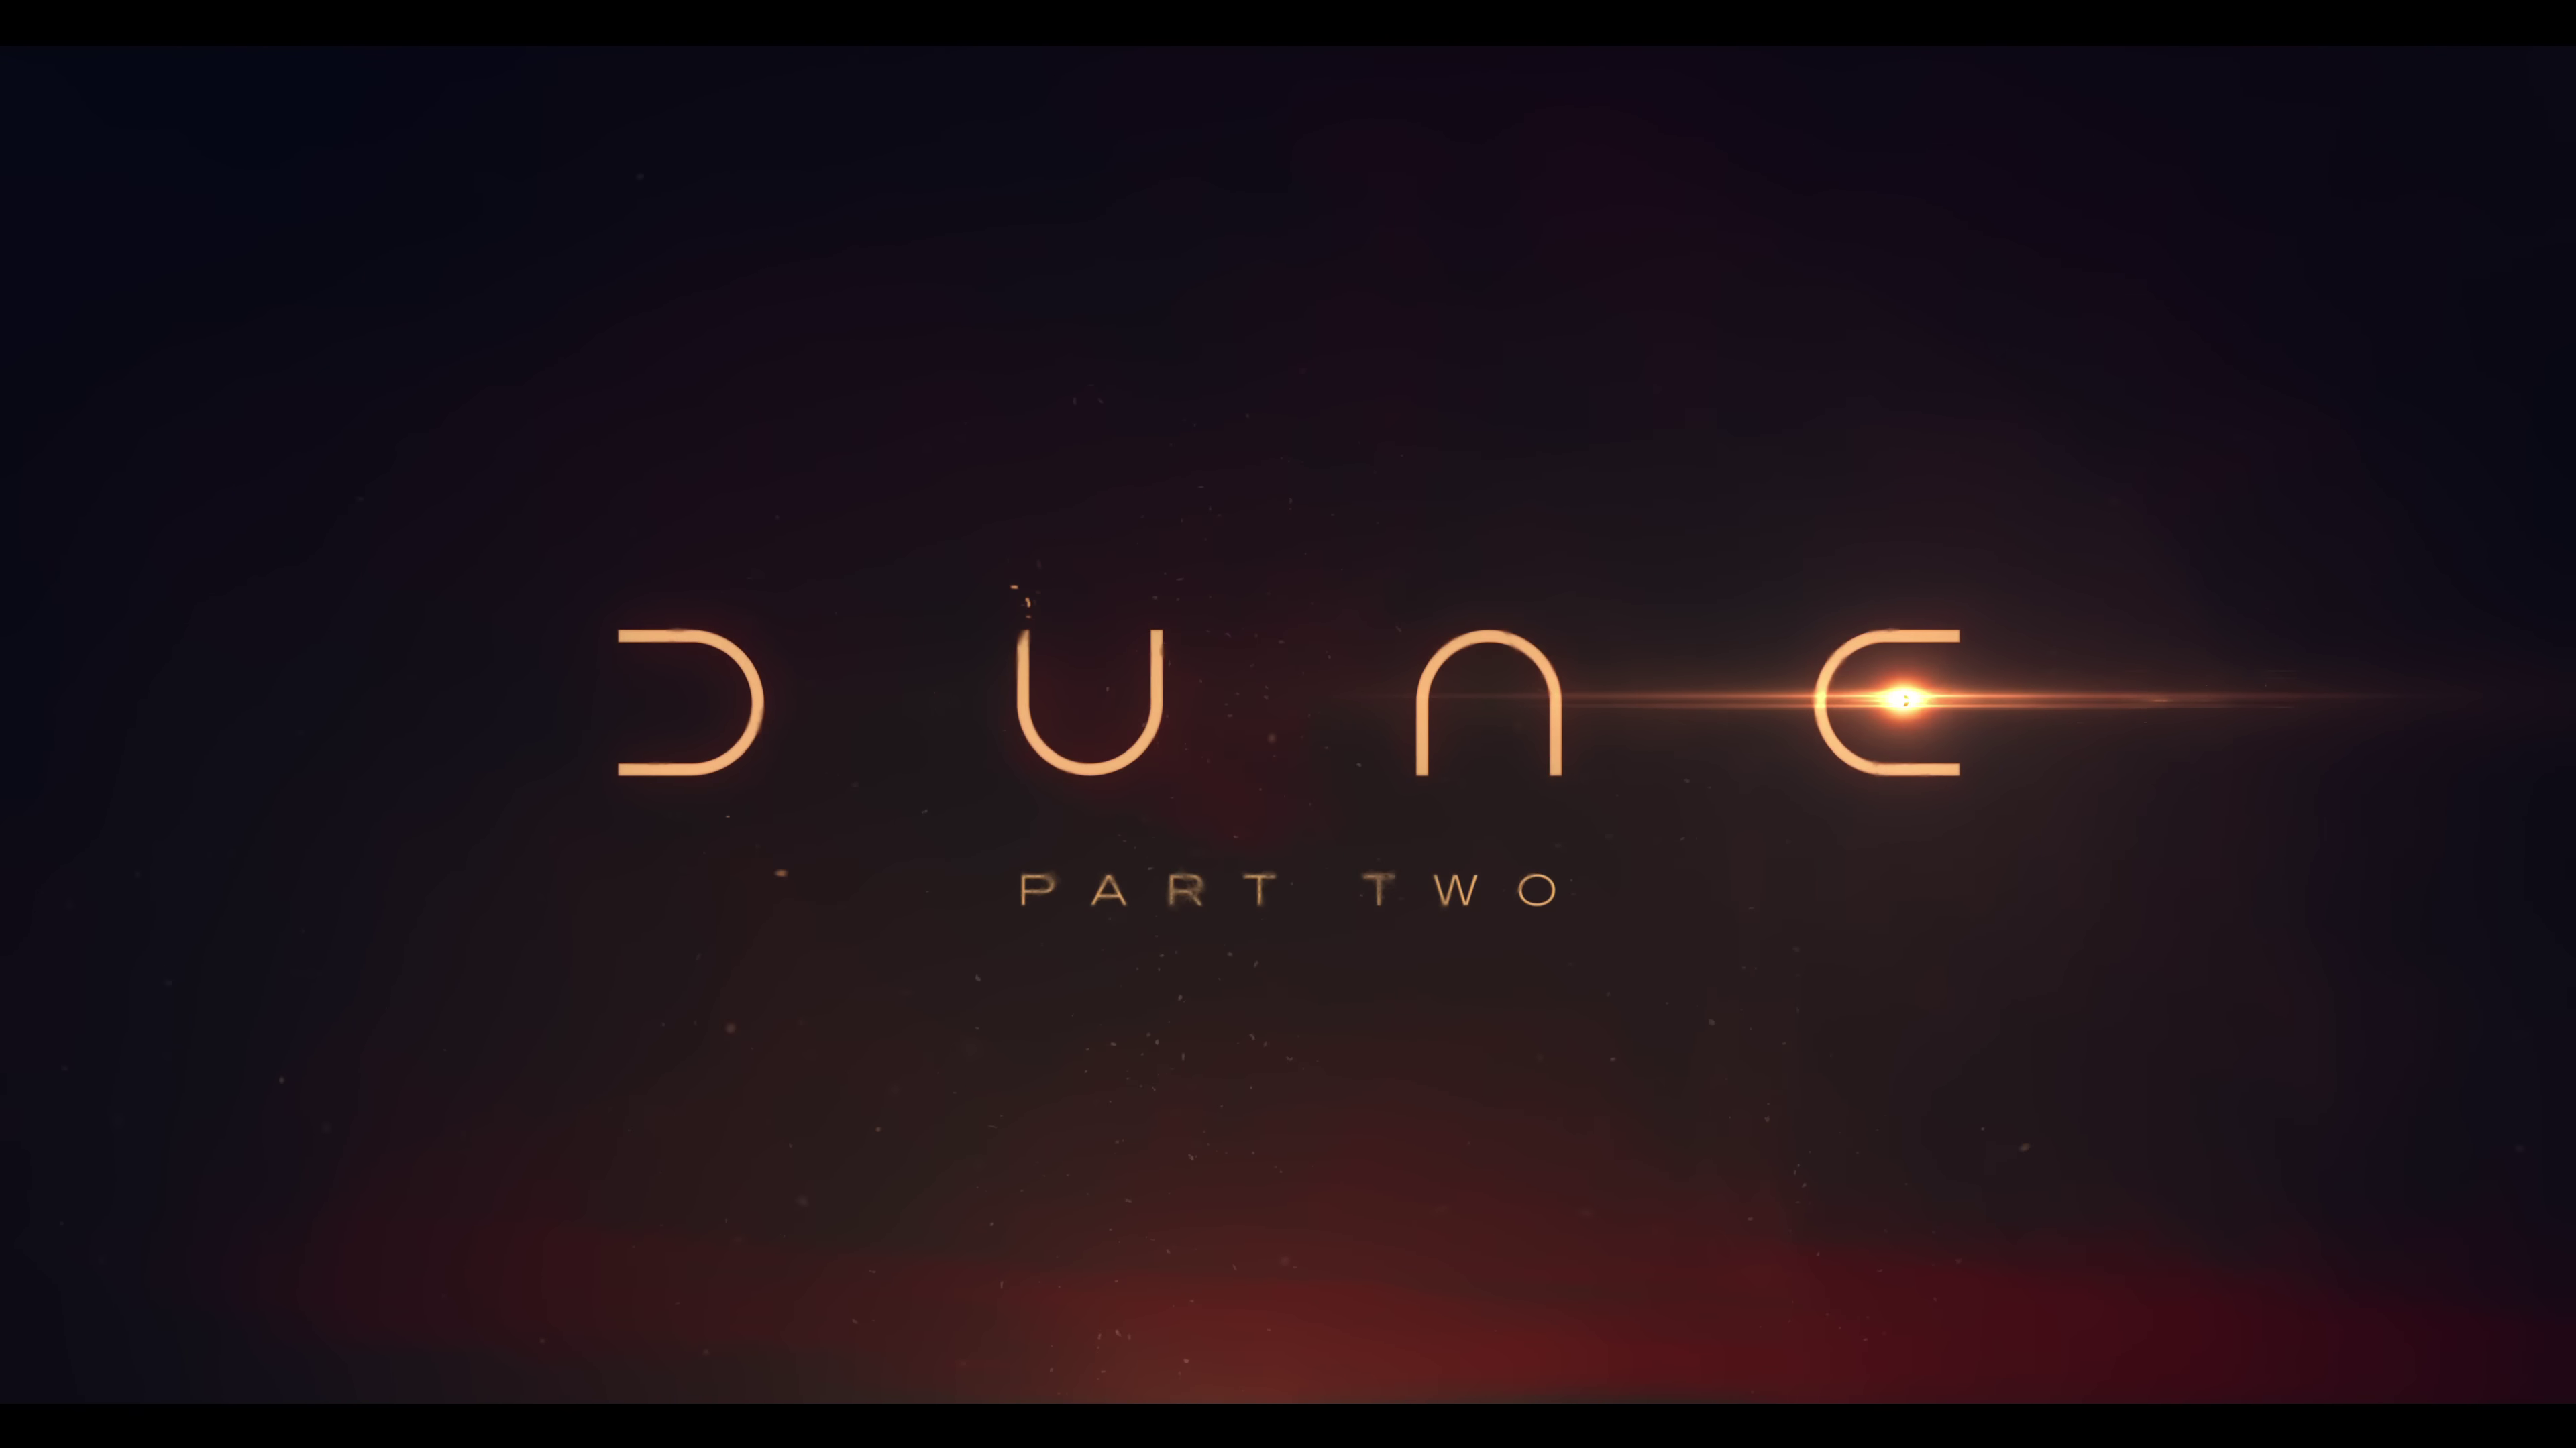 Dune Part Two 4k Desktop Wallpaper